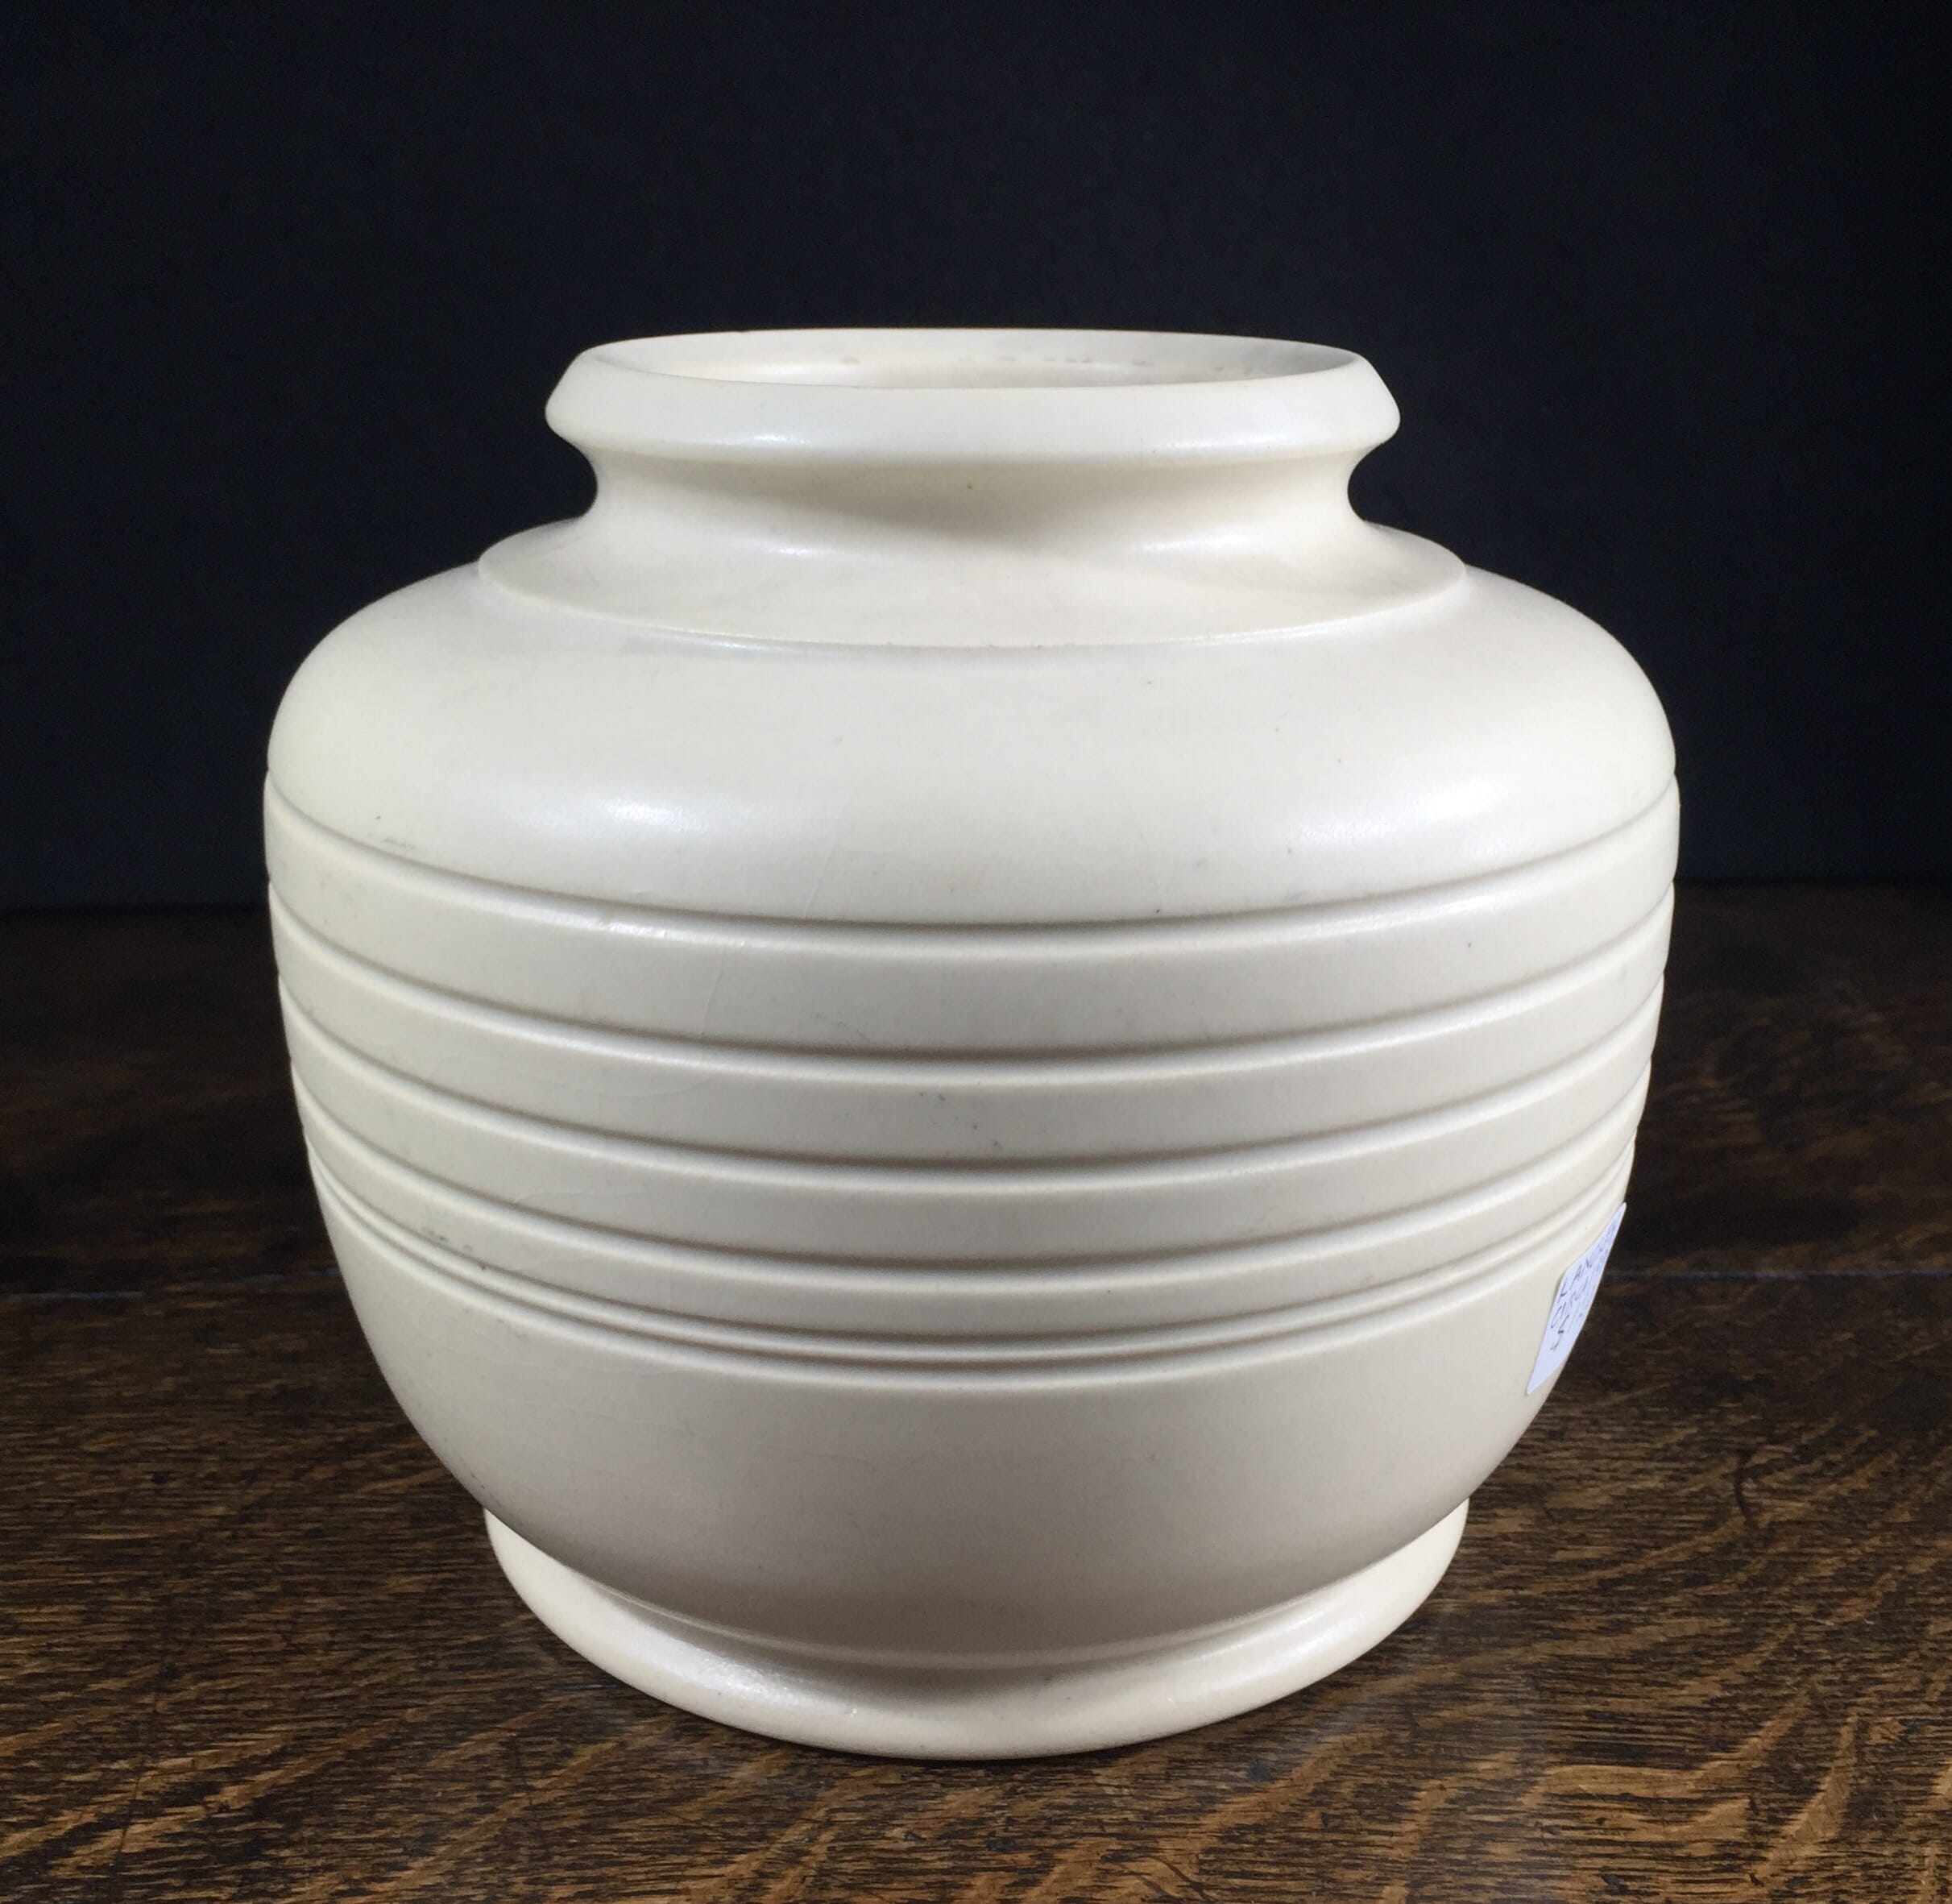 Modernist pottery vase by Langley, circa 1935-0